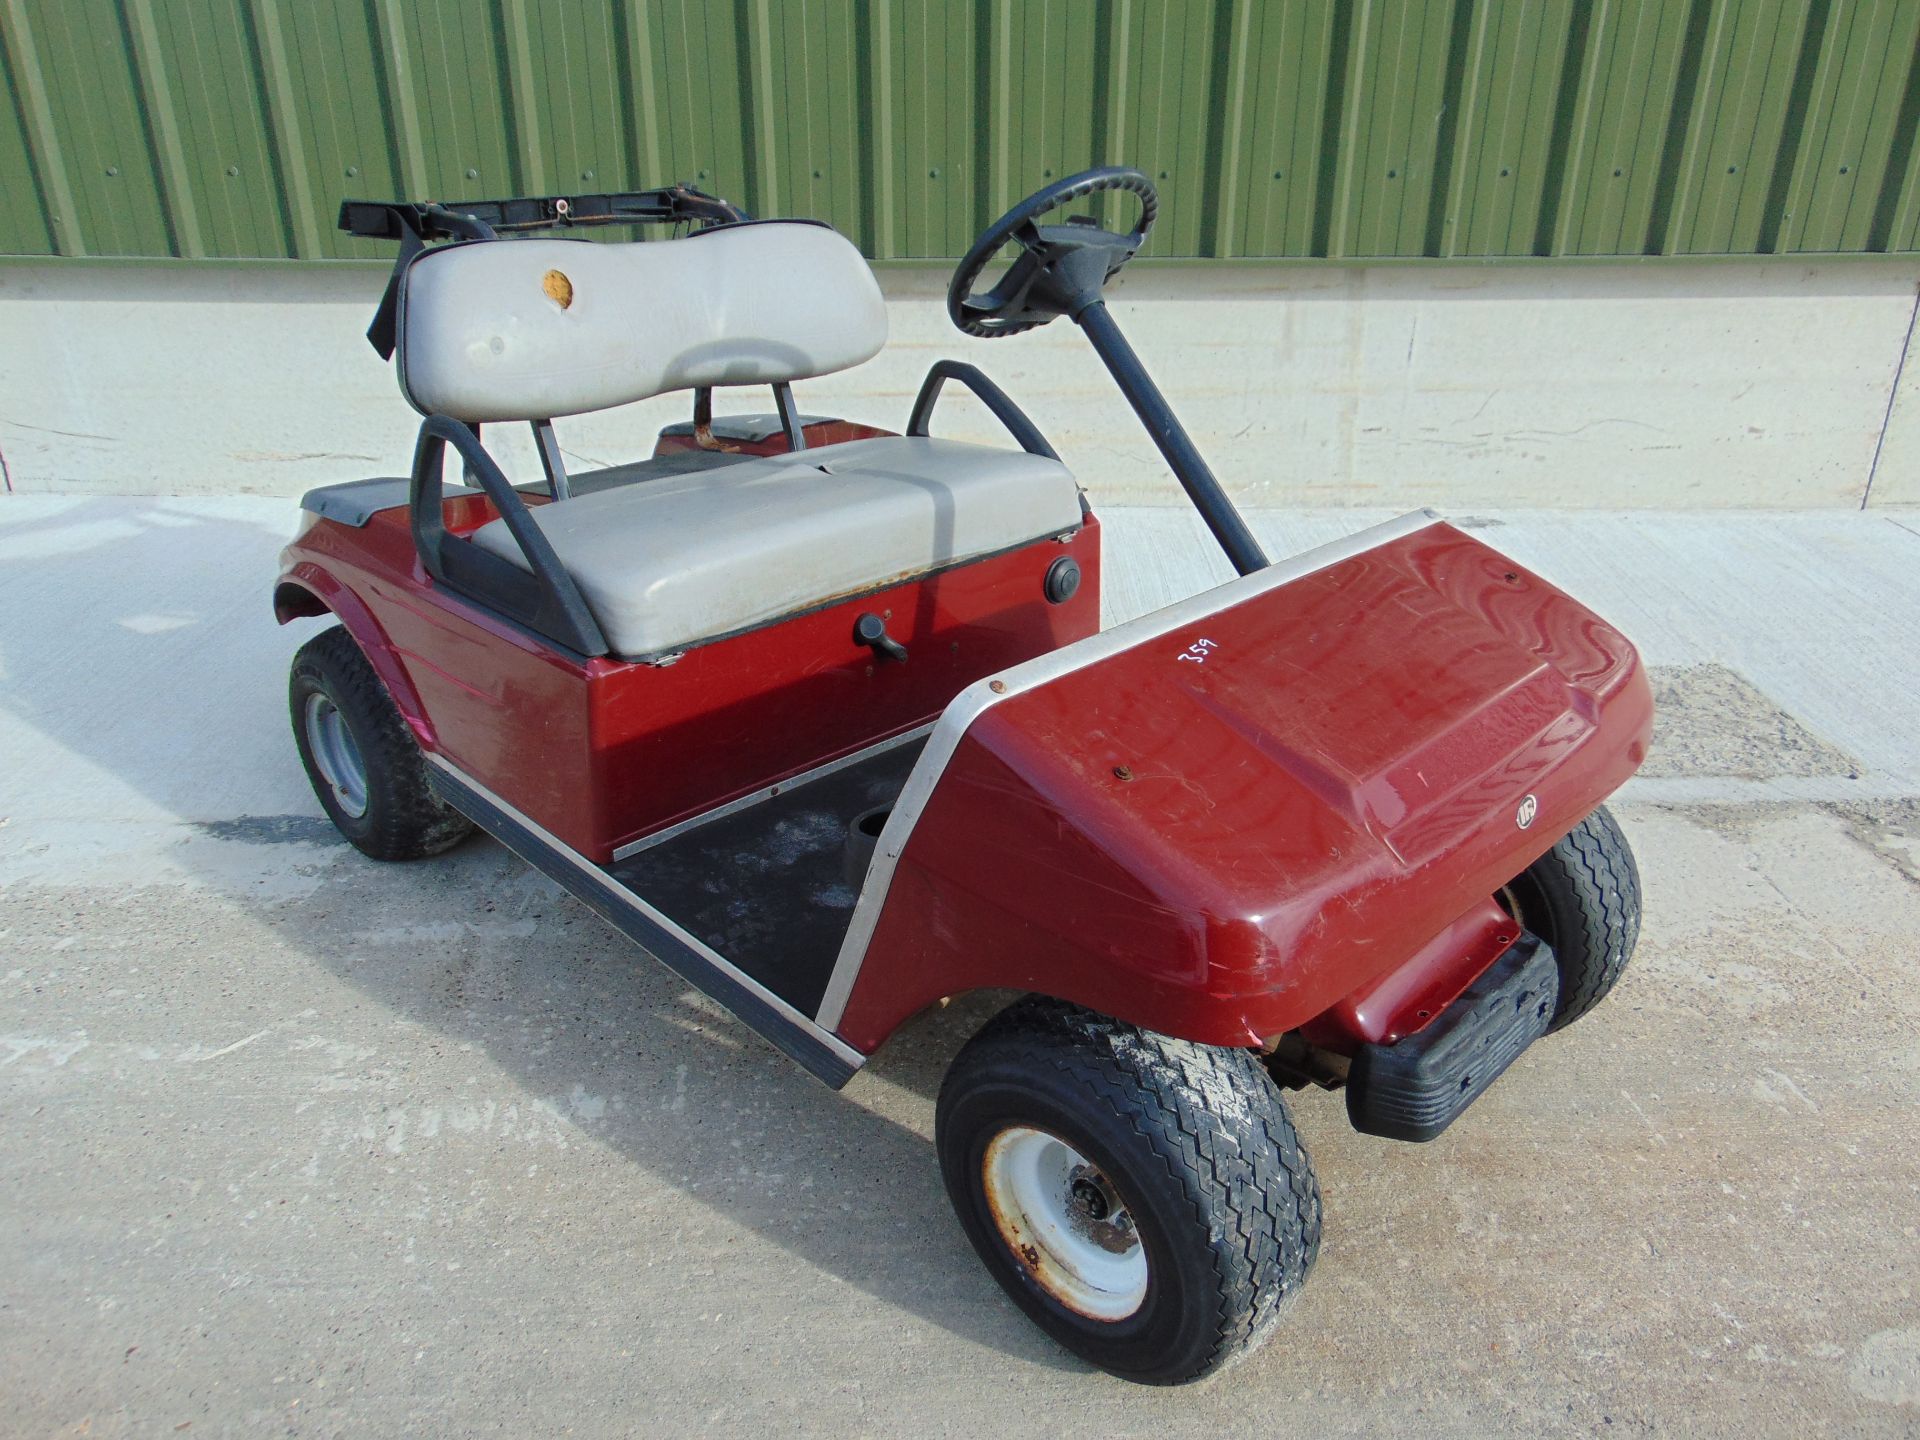 Club Car Golf Cart - Petrol Engine